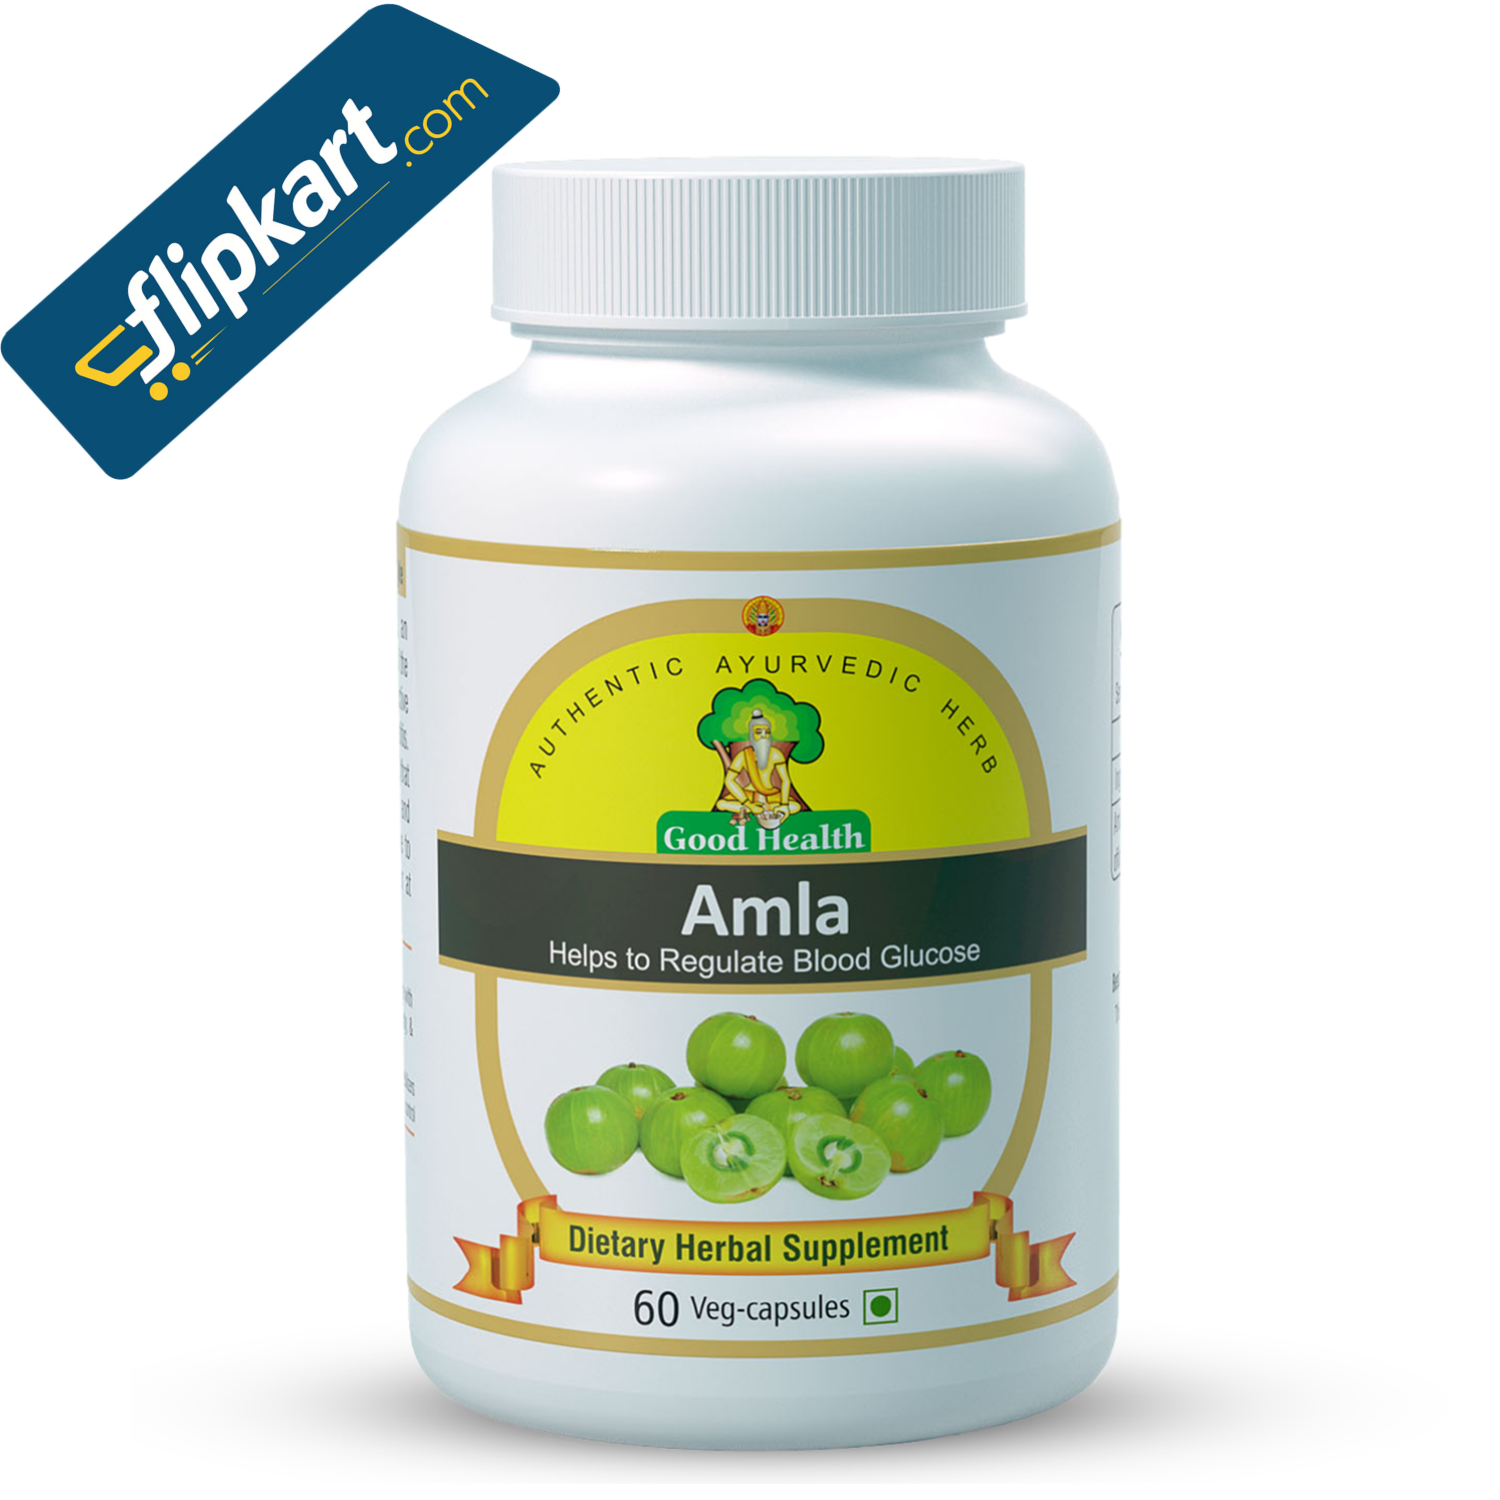 Sushrut Ayurved Industries Amla Dietary Supplement Available on Flipkart